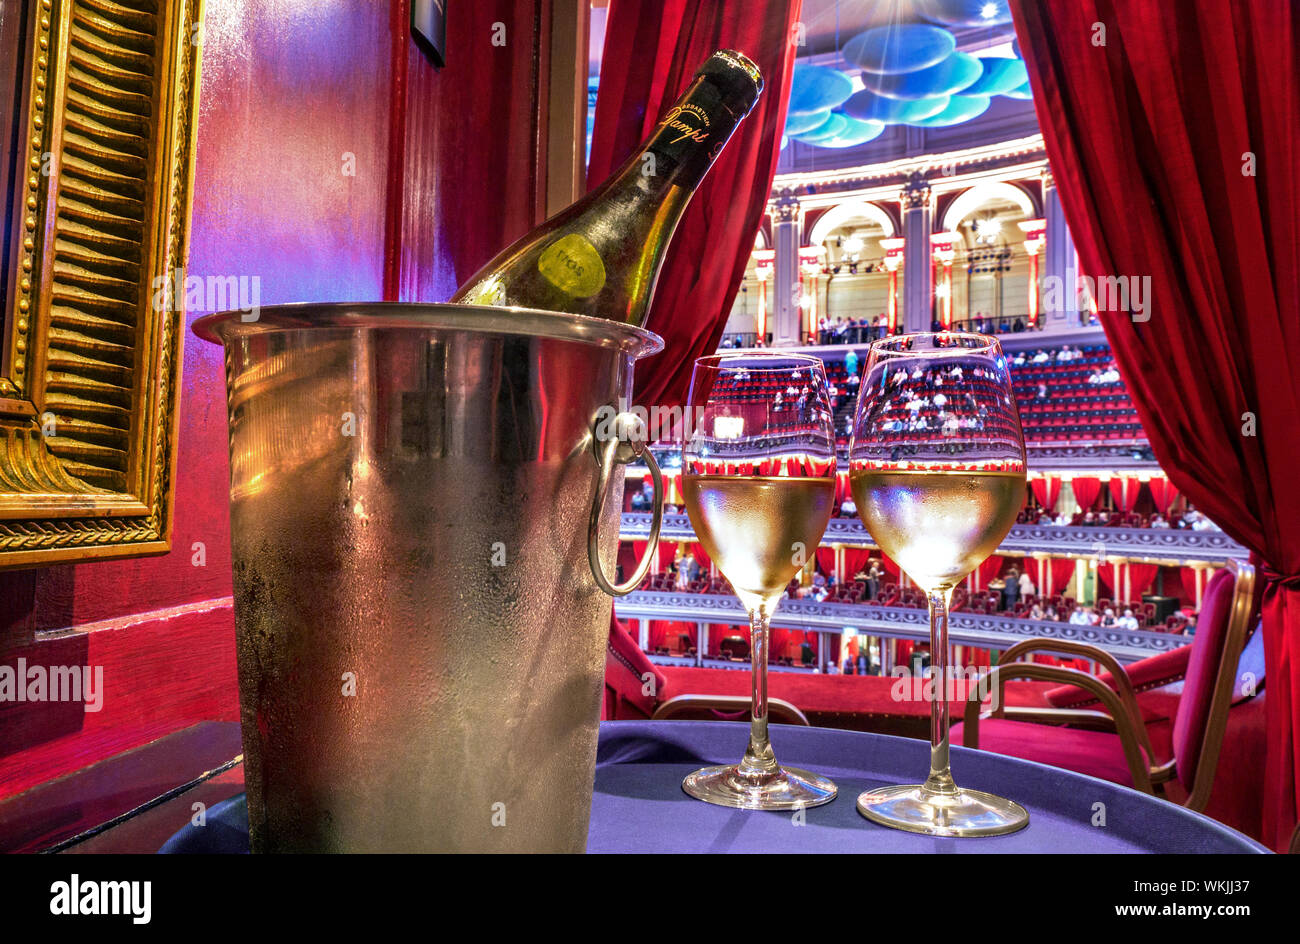 ALBERT HALL VIN SERVICE BOISSONS INTÉRIEUR BOÎTE PRIVÉE ALBERT HALL SERVICE INTERVALLE BOISSONS VIN GLACIÈRE VERRES DE luxe service de rafraîchissements d'intervalle, avec domaine Dampt Chablis vin blanc dans un seau à glace glacé avec des verres versés dans une boîte privée de velours rouge de luxe. Royal Albert Hall Promenade Proms concerts musique divertissement Kensington Londres Royaume-Uni Banque D'Images